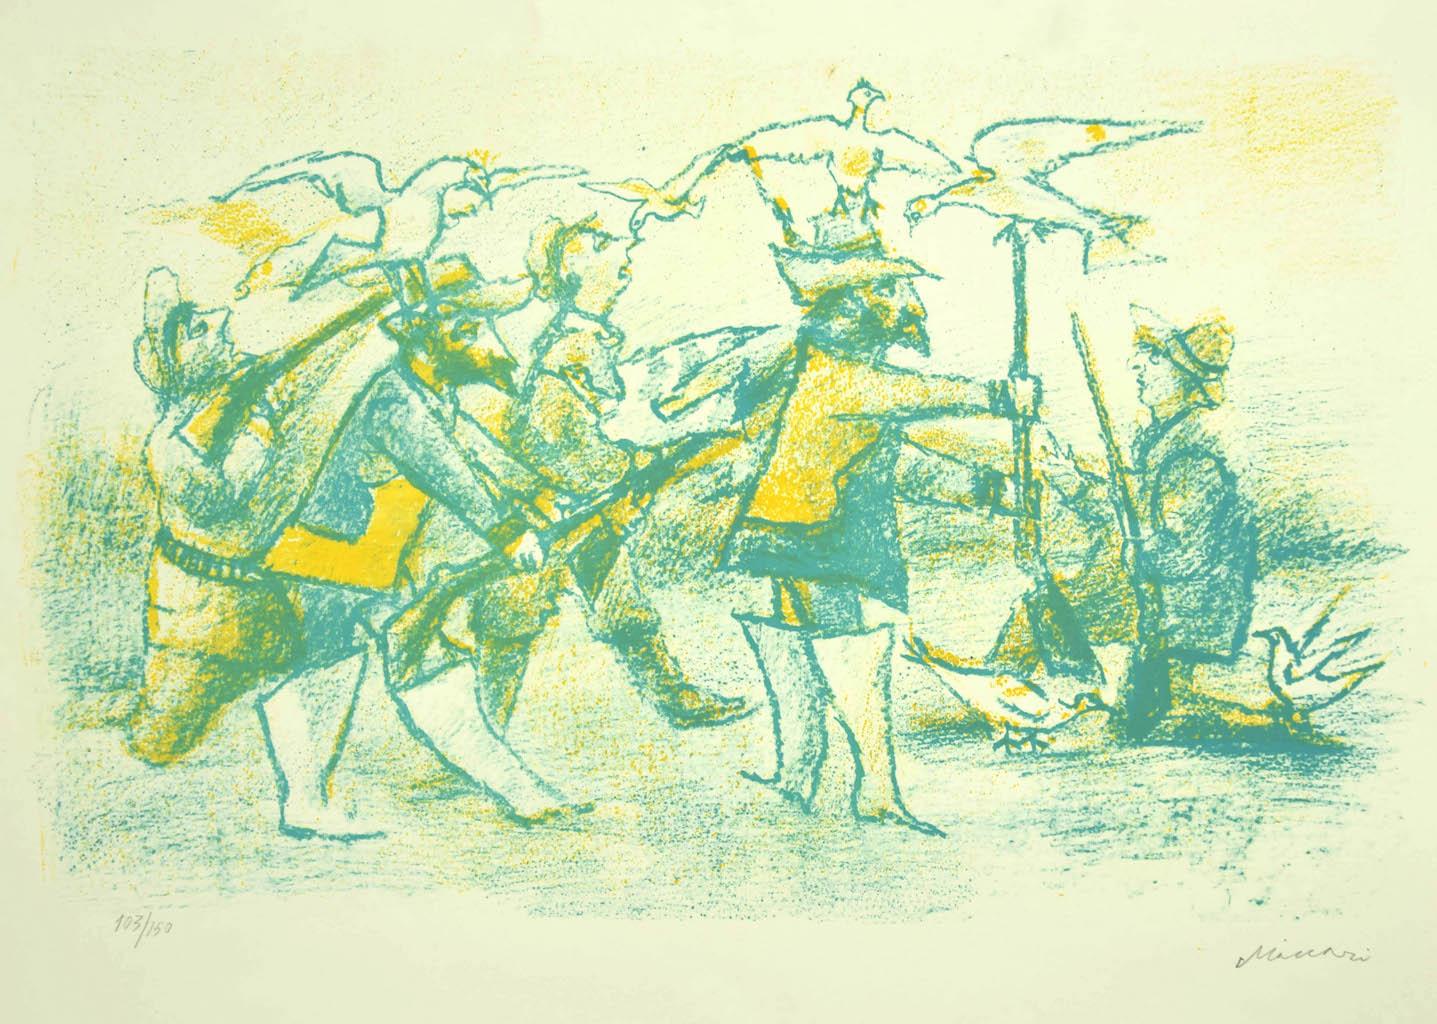 "Jäger"  ist ein originales lithografisches Kunstwerk von Mino Maccari (1898-1989).

Rechts unten mit Bleistift handsigniert und links unten nummeriert, Auflage 103/150 Exemplare.

In gutem Zustand, mit Ausnahme einiger kleiner Flecken an den